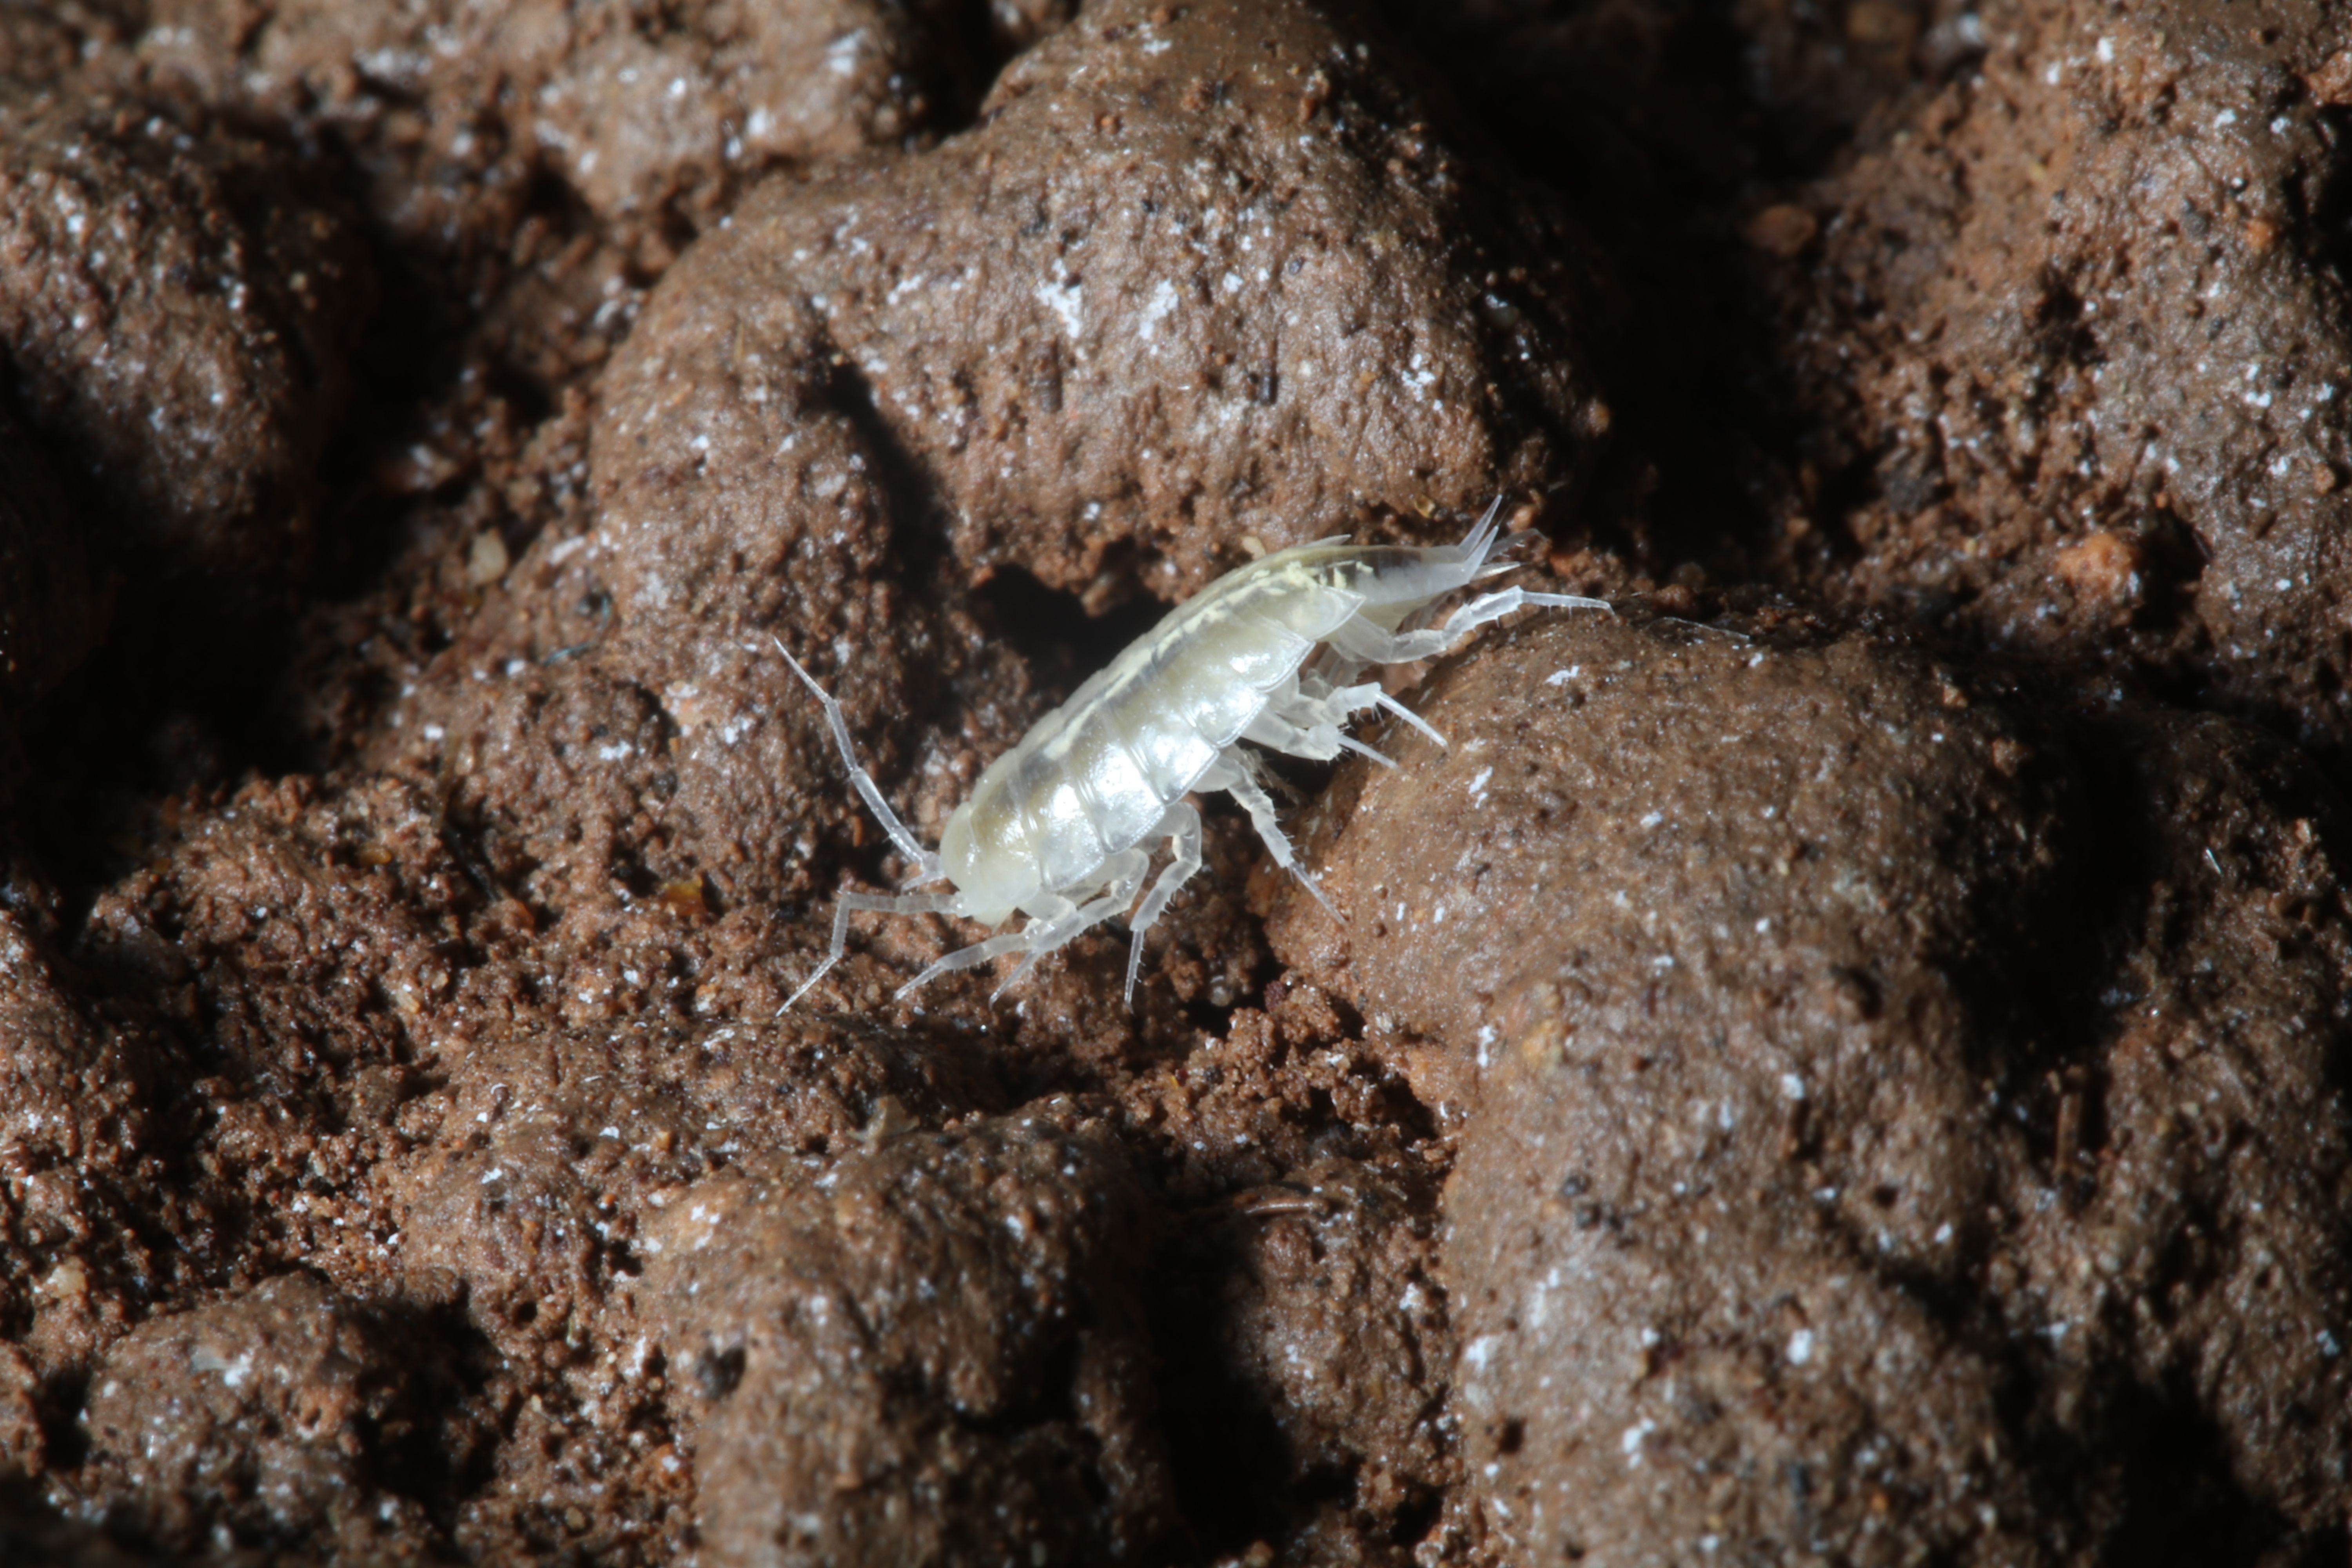 Jednakonožni rak (Isopoda) iz roda Alpioniscus nađen u špilji Drinova II / Foto J. BEDEK